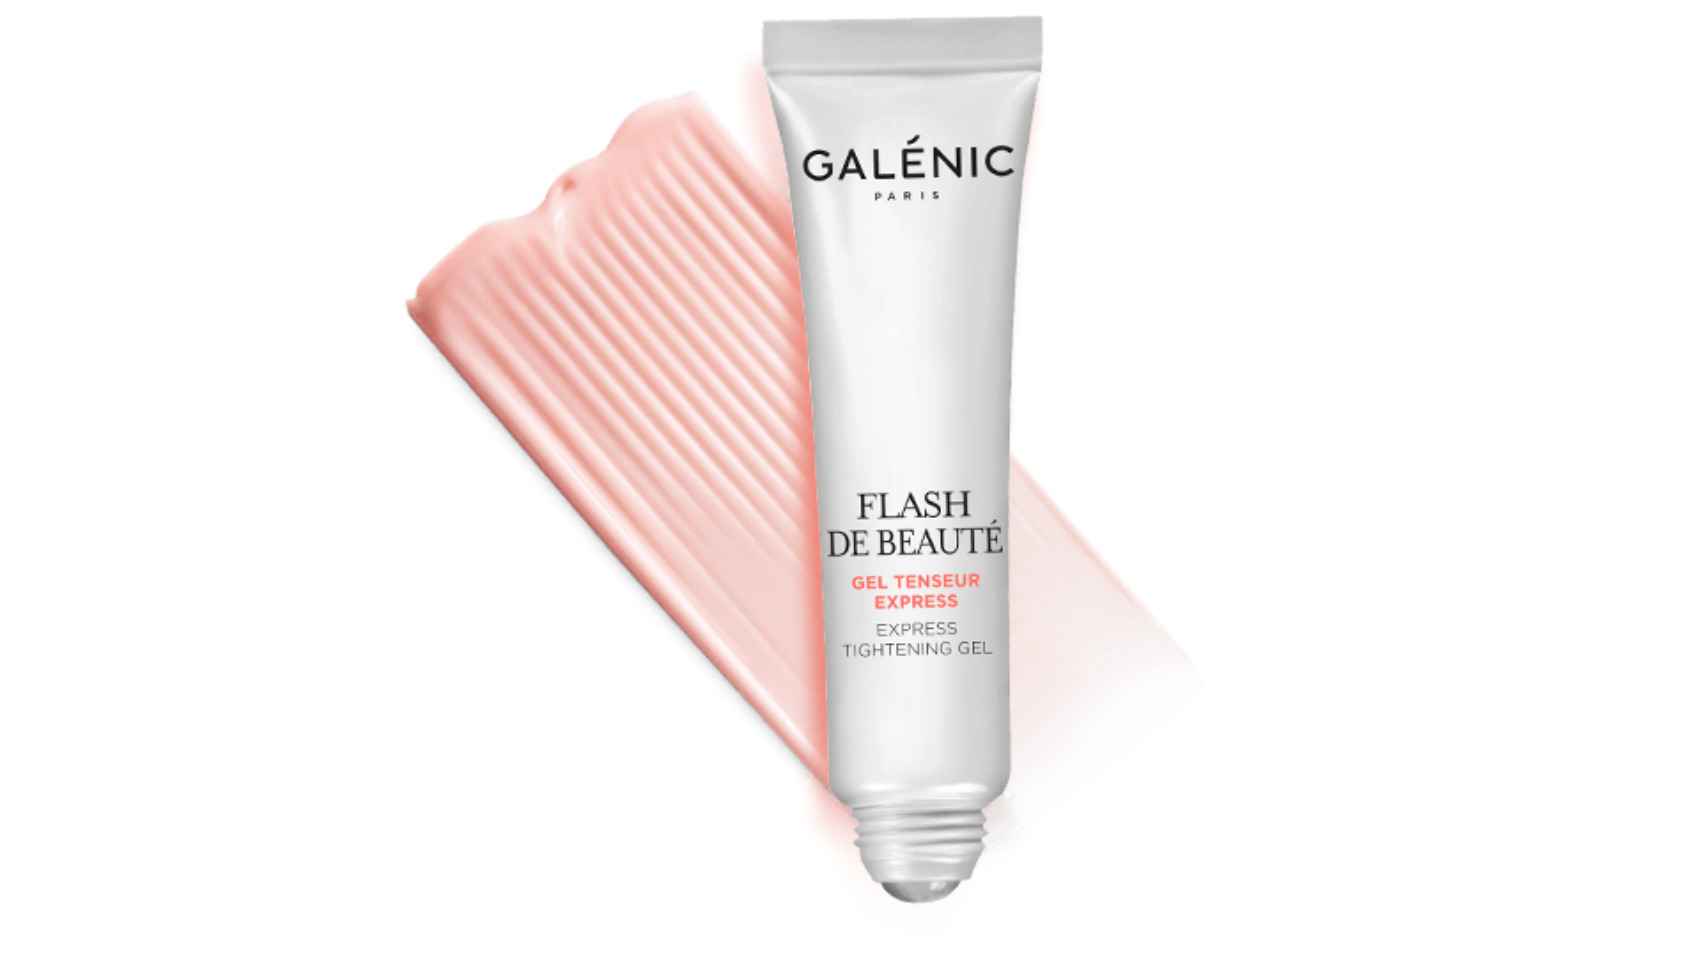 En formato roll-on, Flash de beauté promete eliminar las arrugas y alisar la piel.